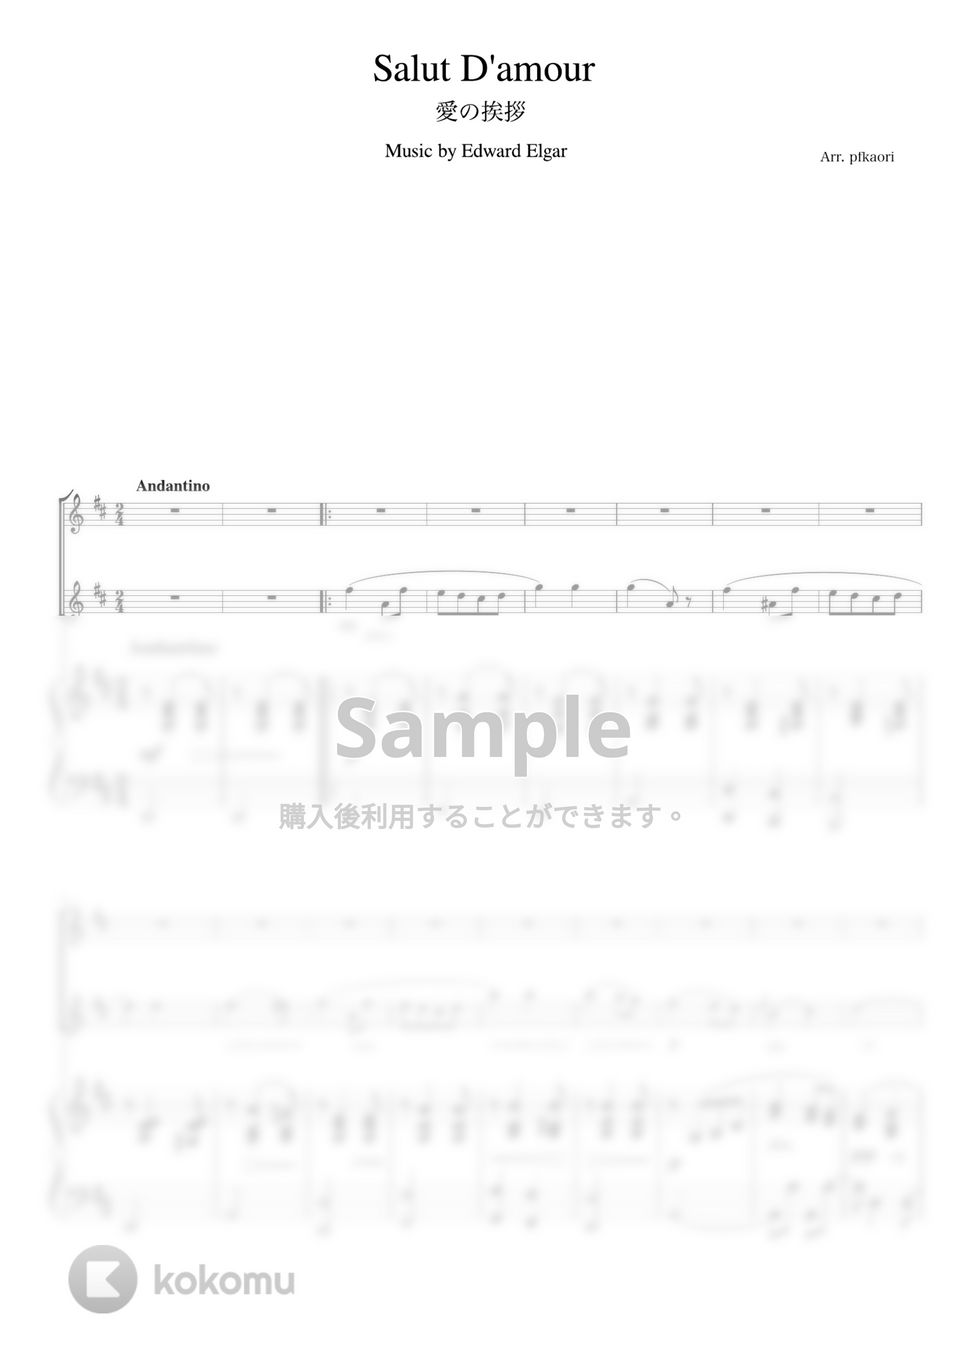 エルガー - 愛の挨拶 (Ddur・ピアノトリオ(フルート・バイオリン)) by pfkaori